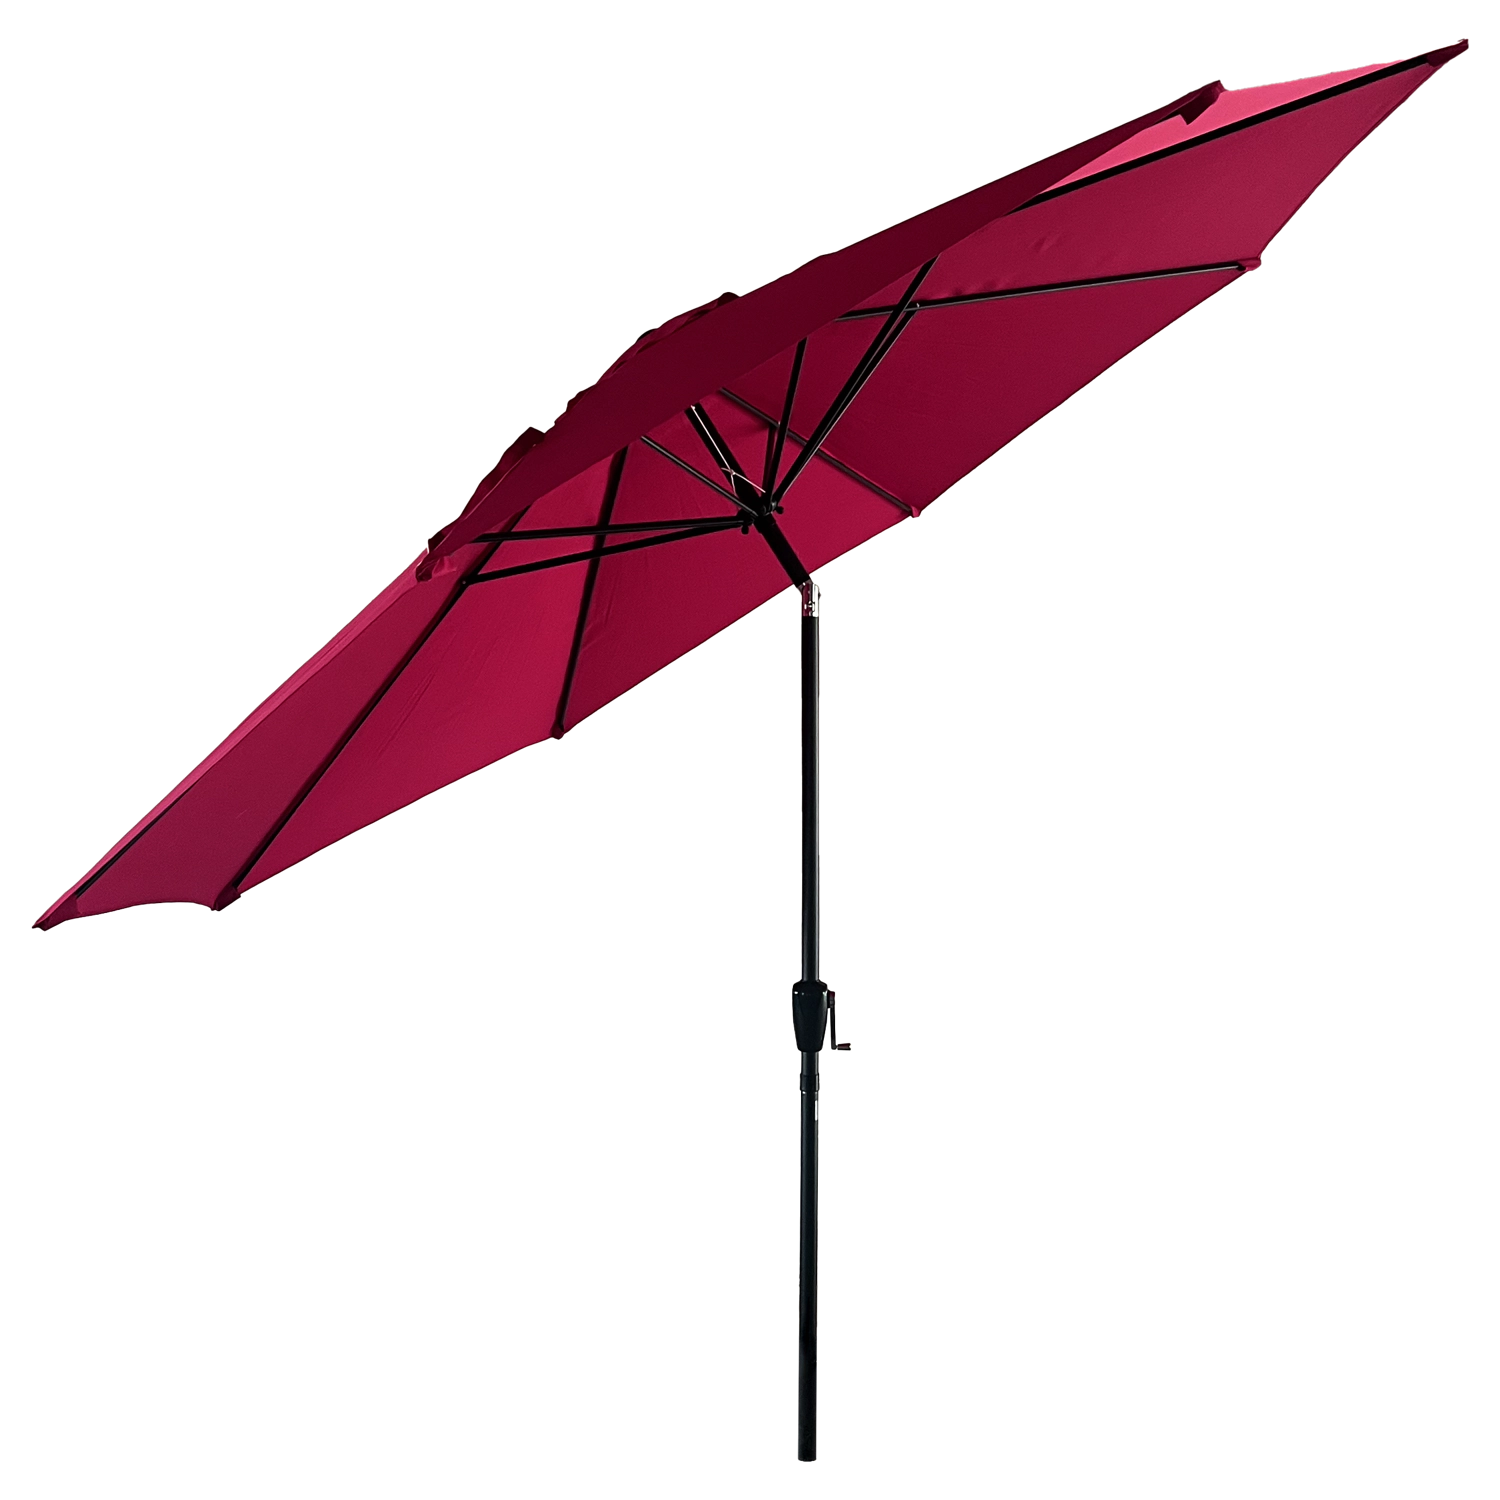 HAPUNA guarda-chuva recto redondo de 3,30m de diâmetro fúcsia